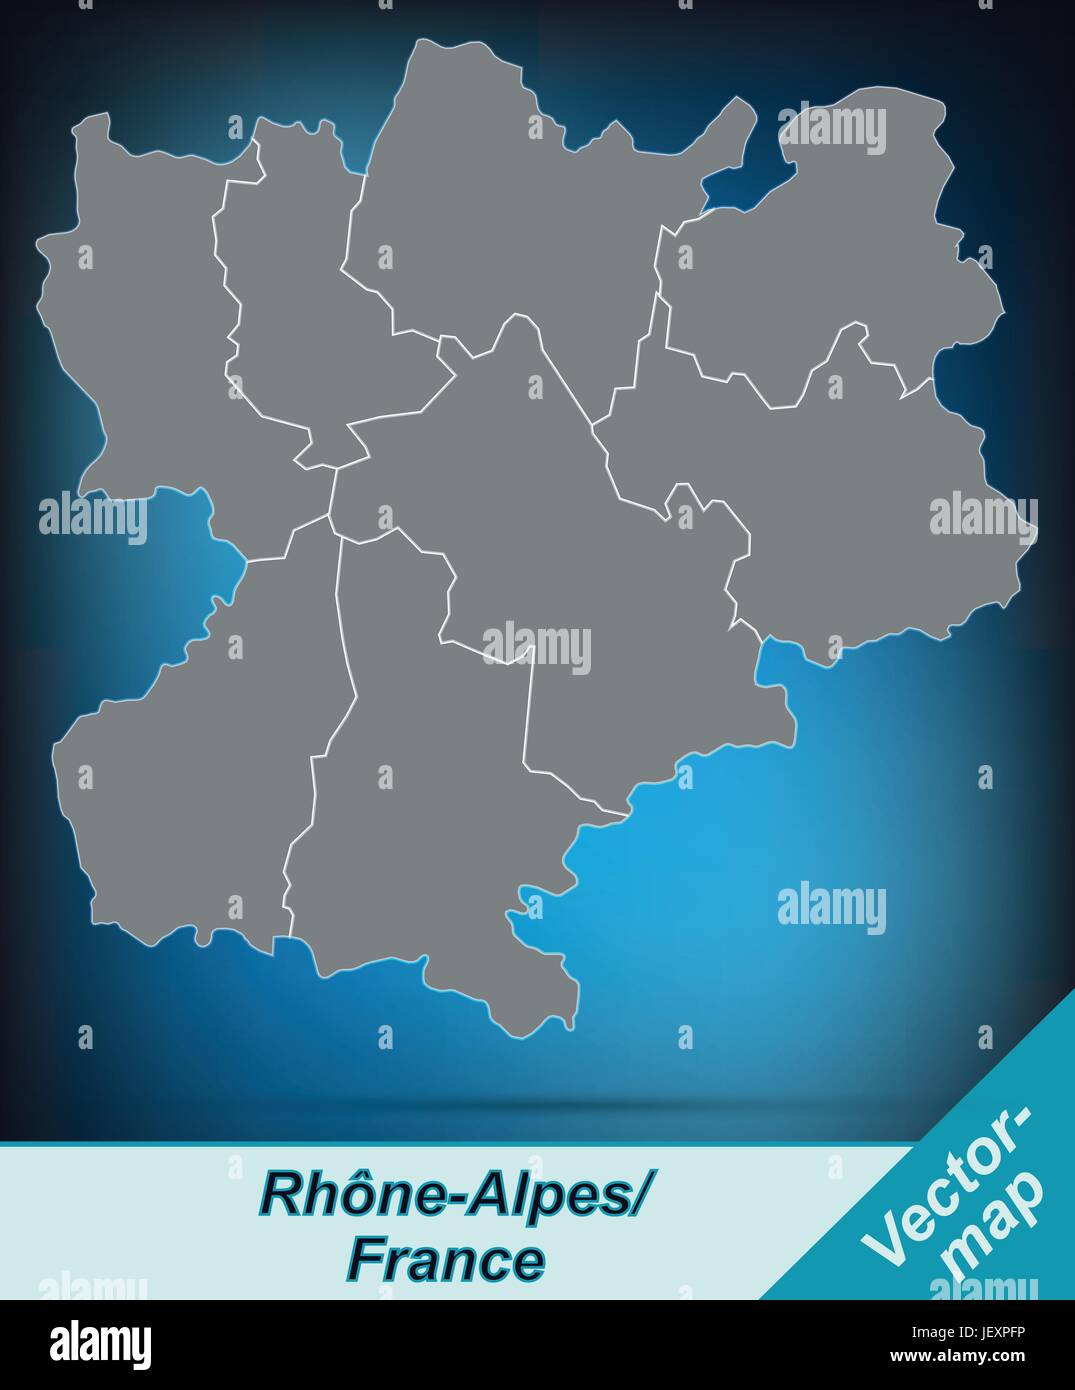 Carte d'rhrne-alpes aux frontières en gris clair Illustration de Vecteur